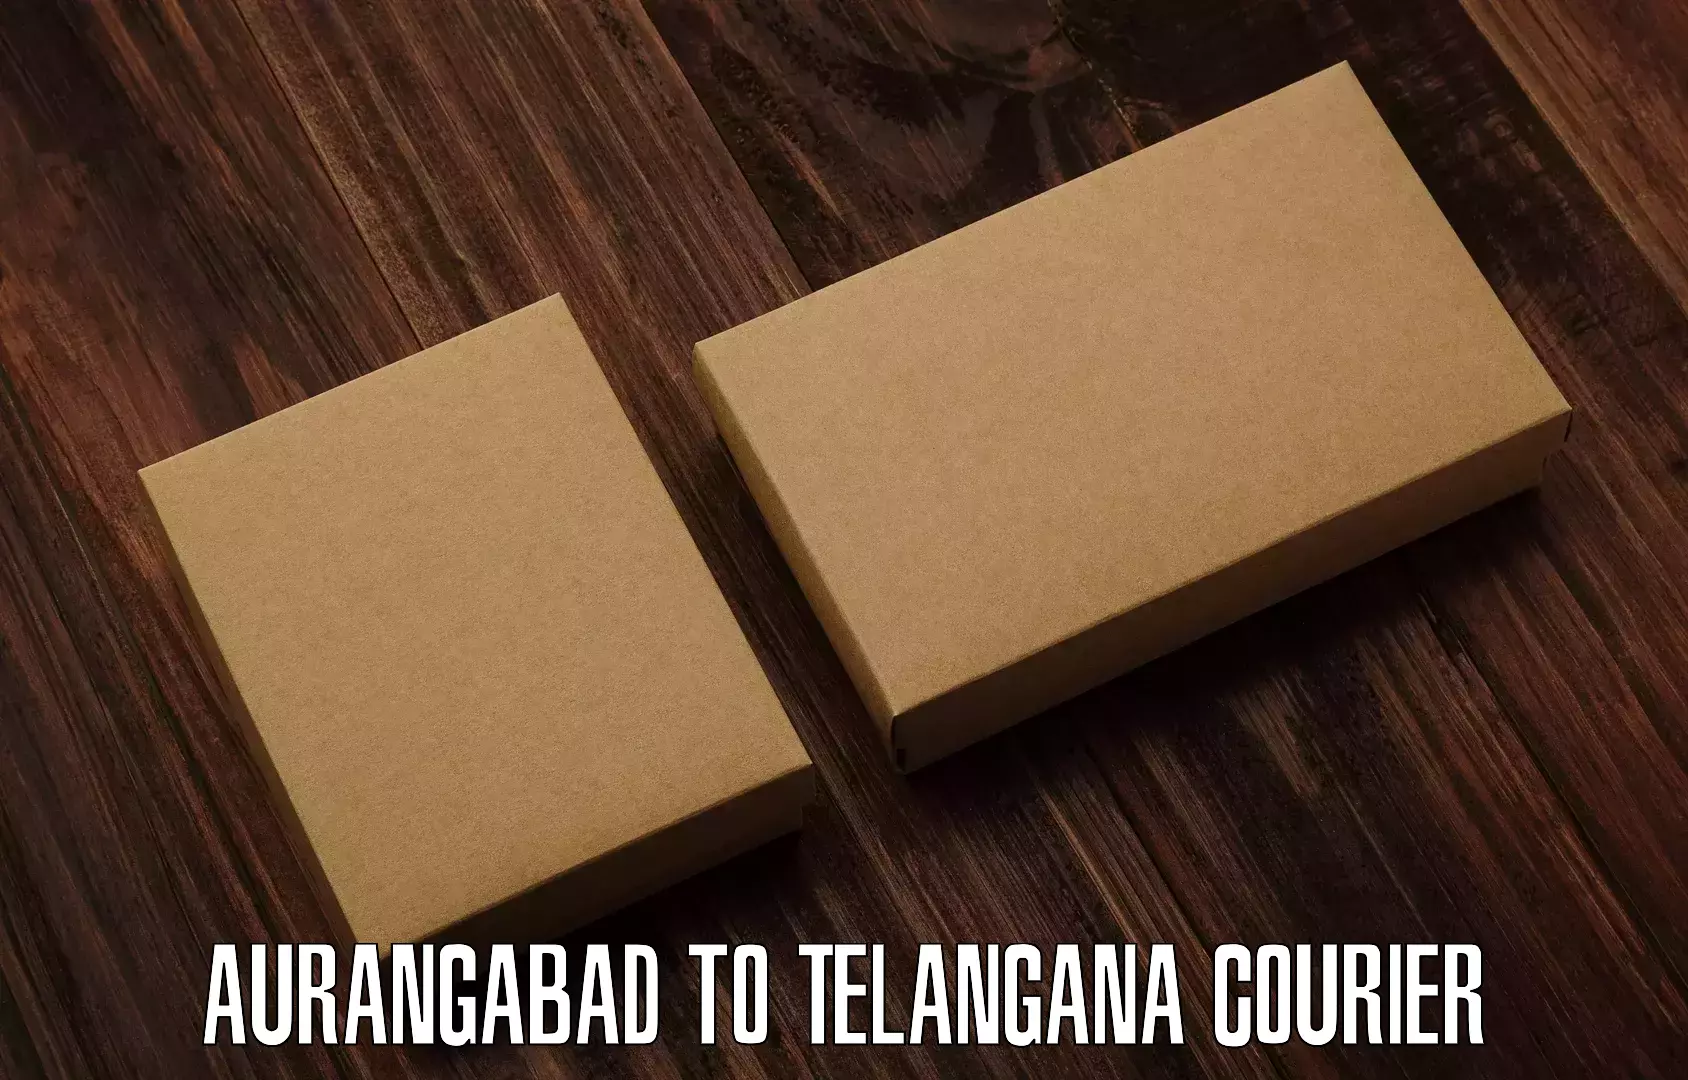 Cargo delivery service Aurangabad to Ramagundam